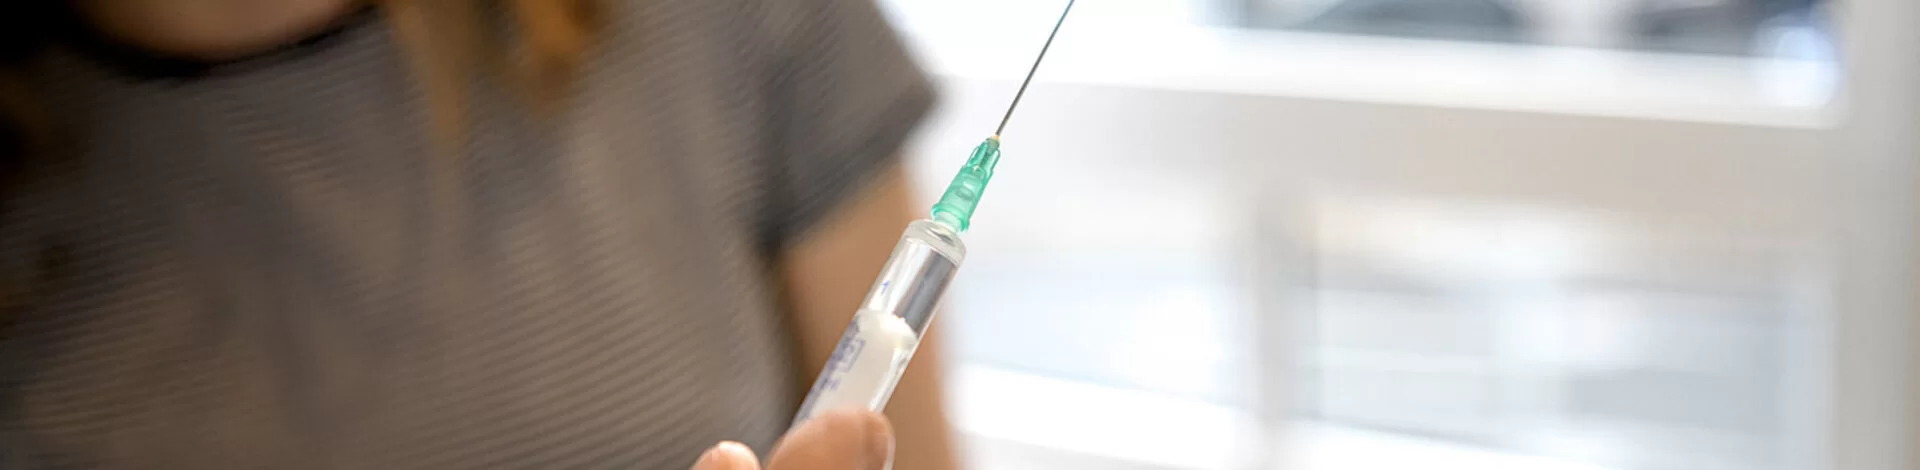 Ein Arzt bereitet eine Spritze für eine Reiseschutzimpfung vor.